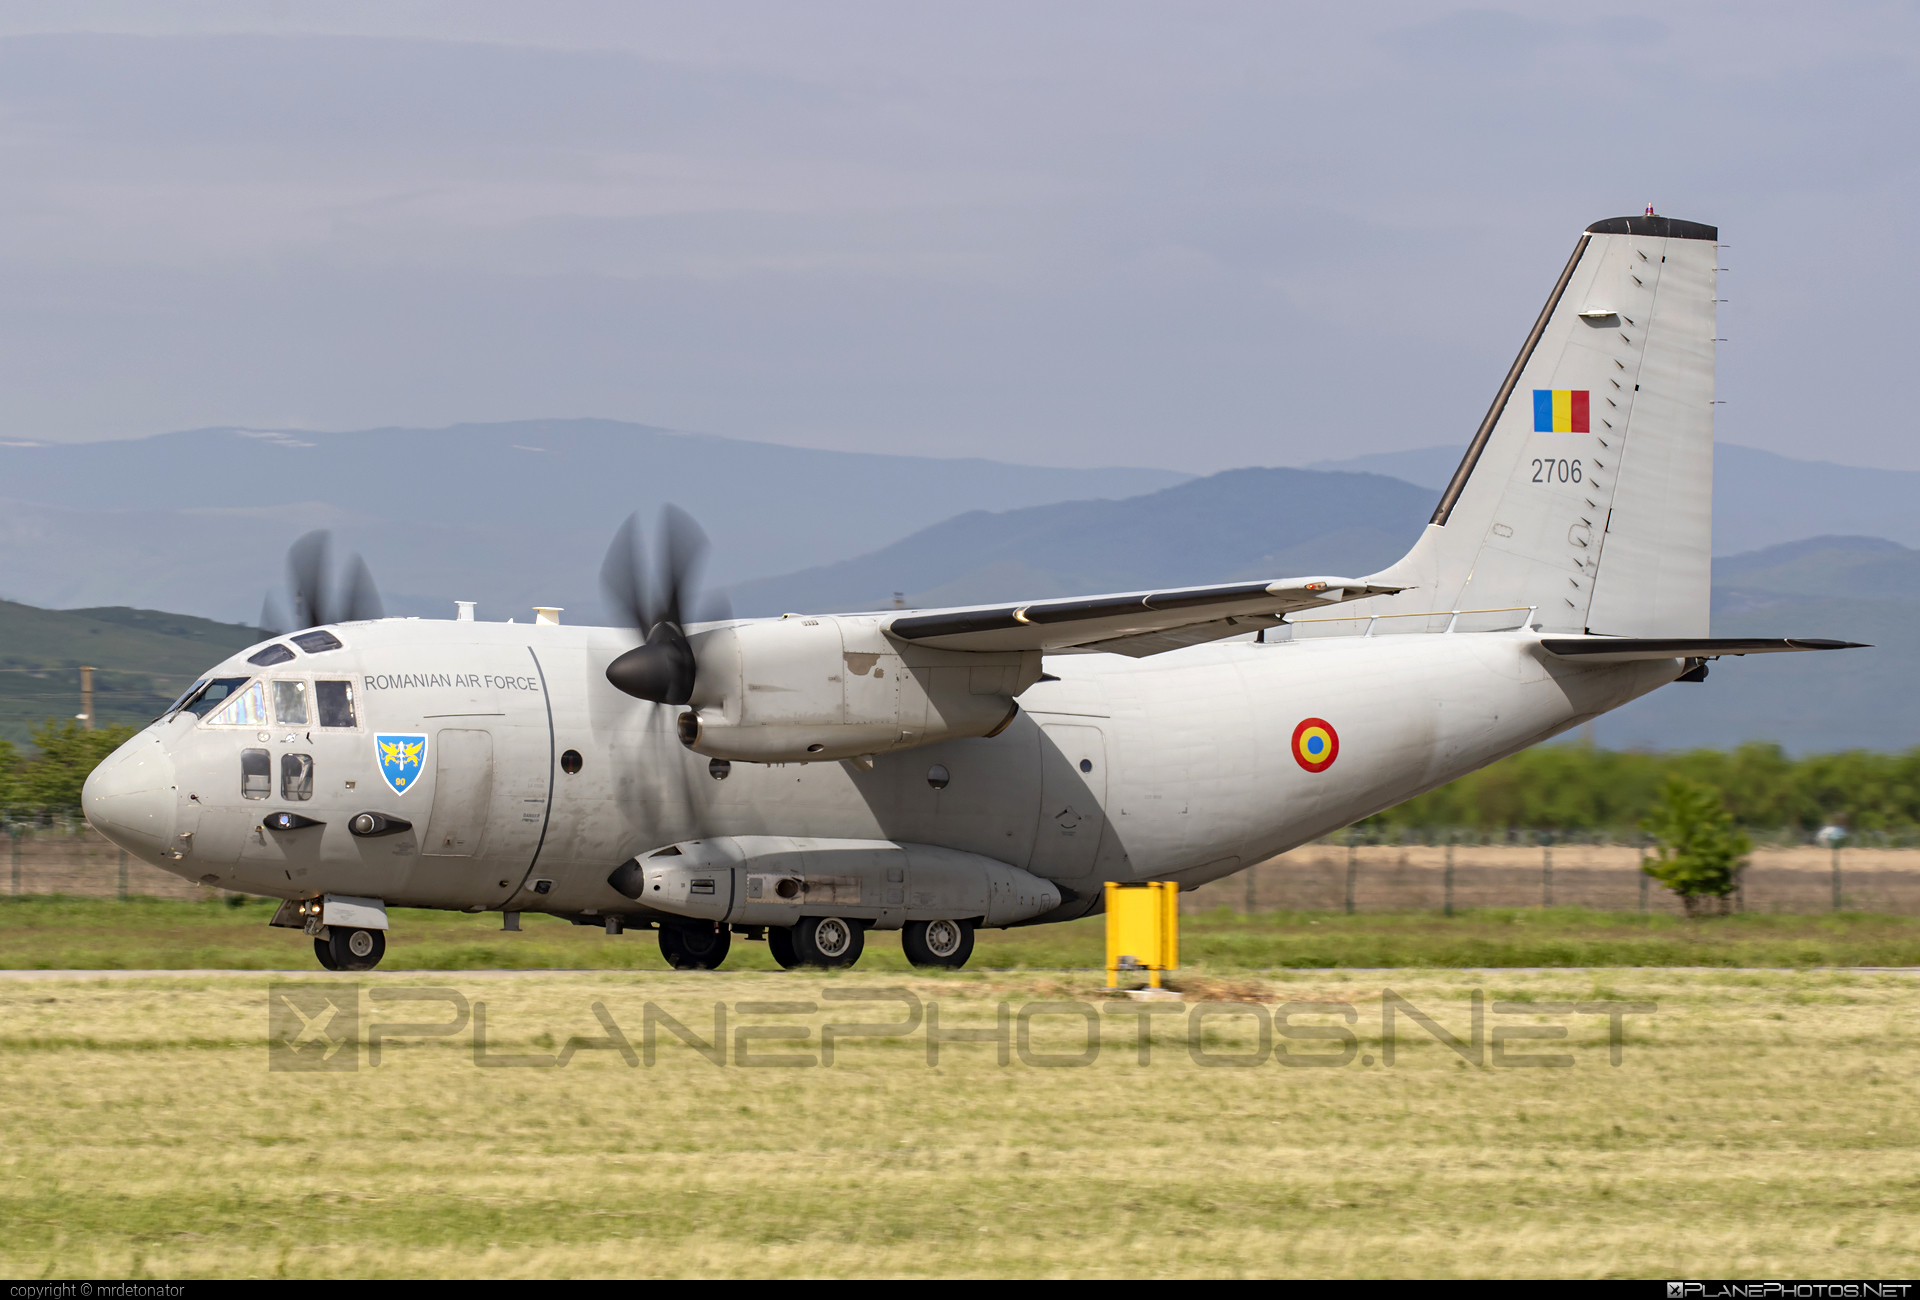 Alenia C-27J Spartan - 2706 operated by Forţele Aeriene Române (Romanian Air Force) #alenia #aleniac27j #aleniac27jspartan #aleniaspartan #c27j #c27jspartan #c27spartan #forteleaerieneromane #romanianairforce